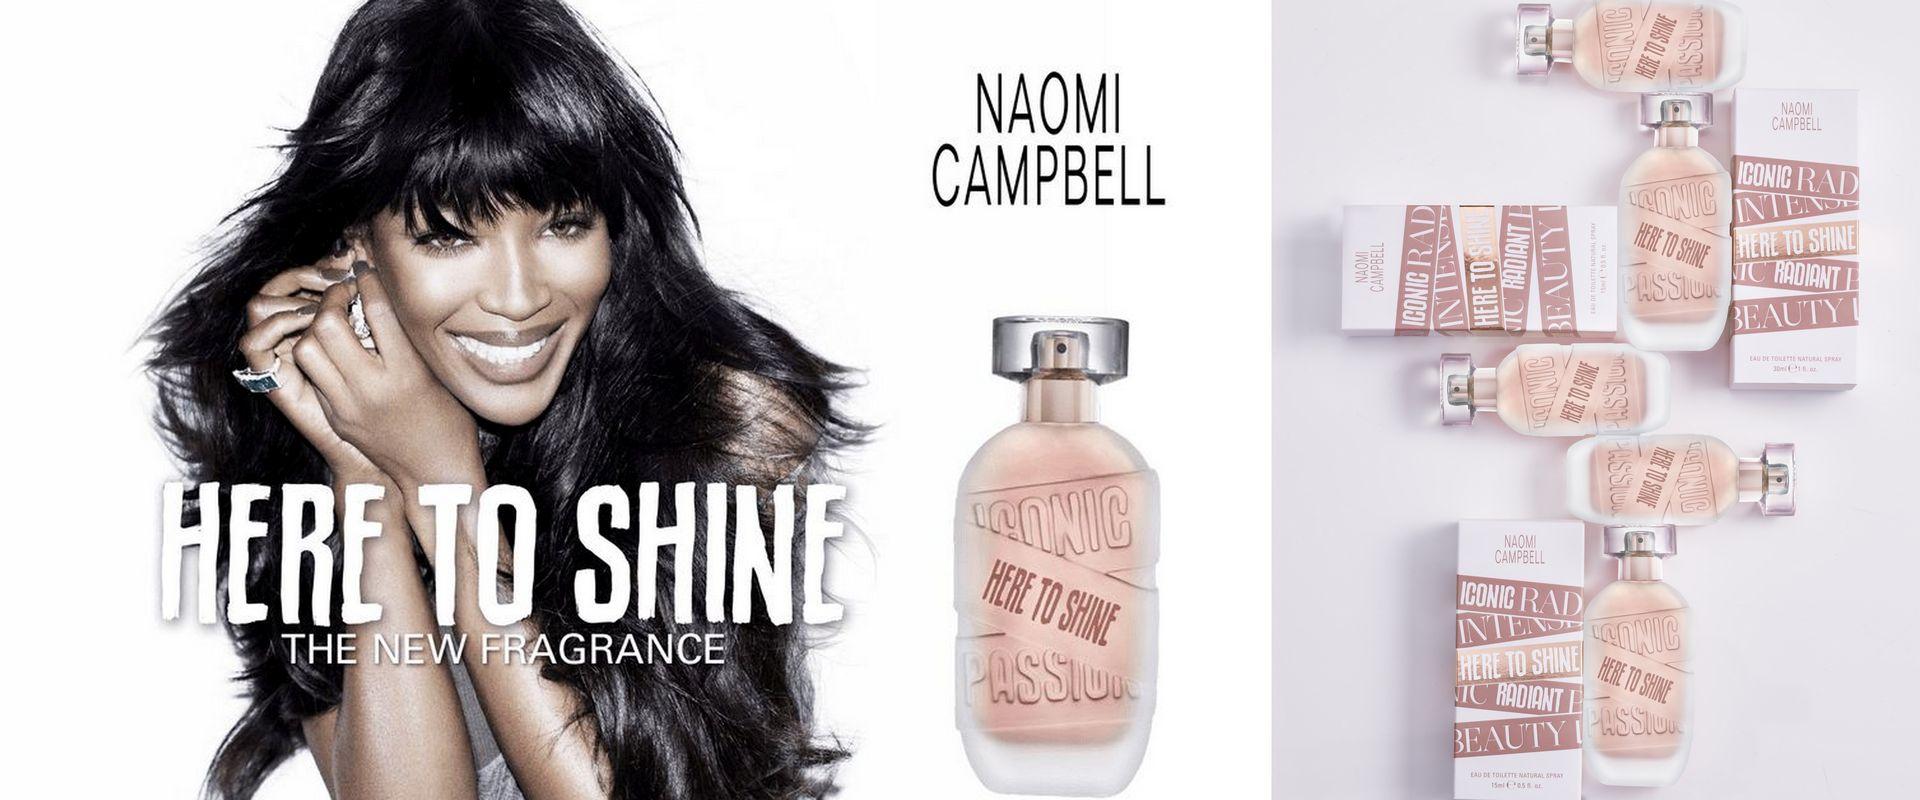 Czas błyszczeć - Here to Shine nowość marki Naomi Campbell